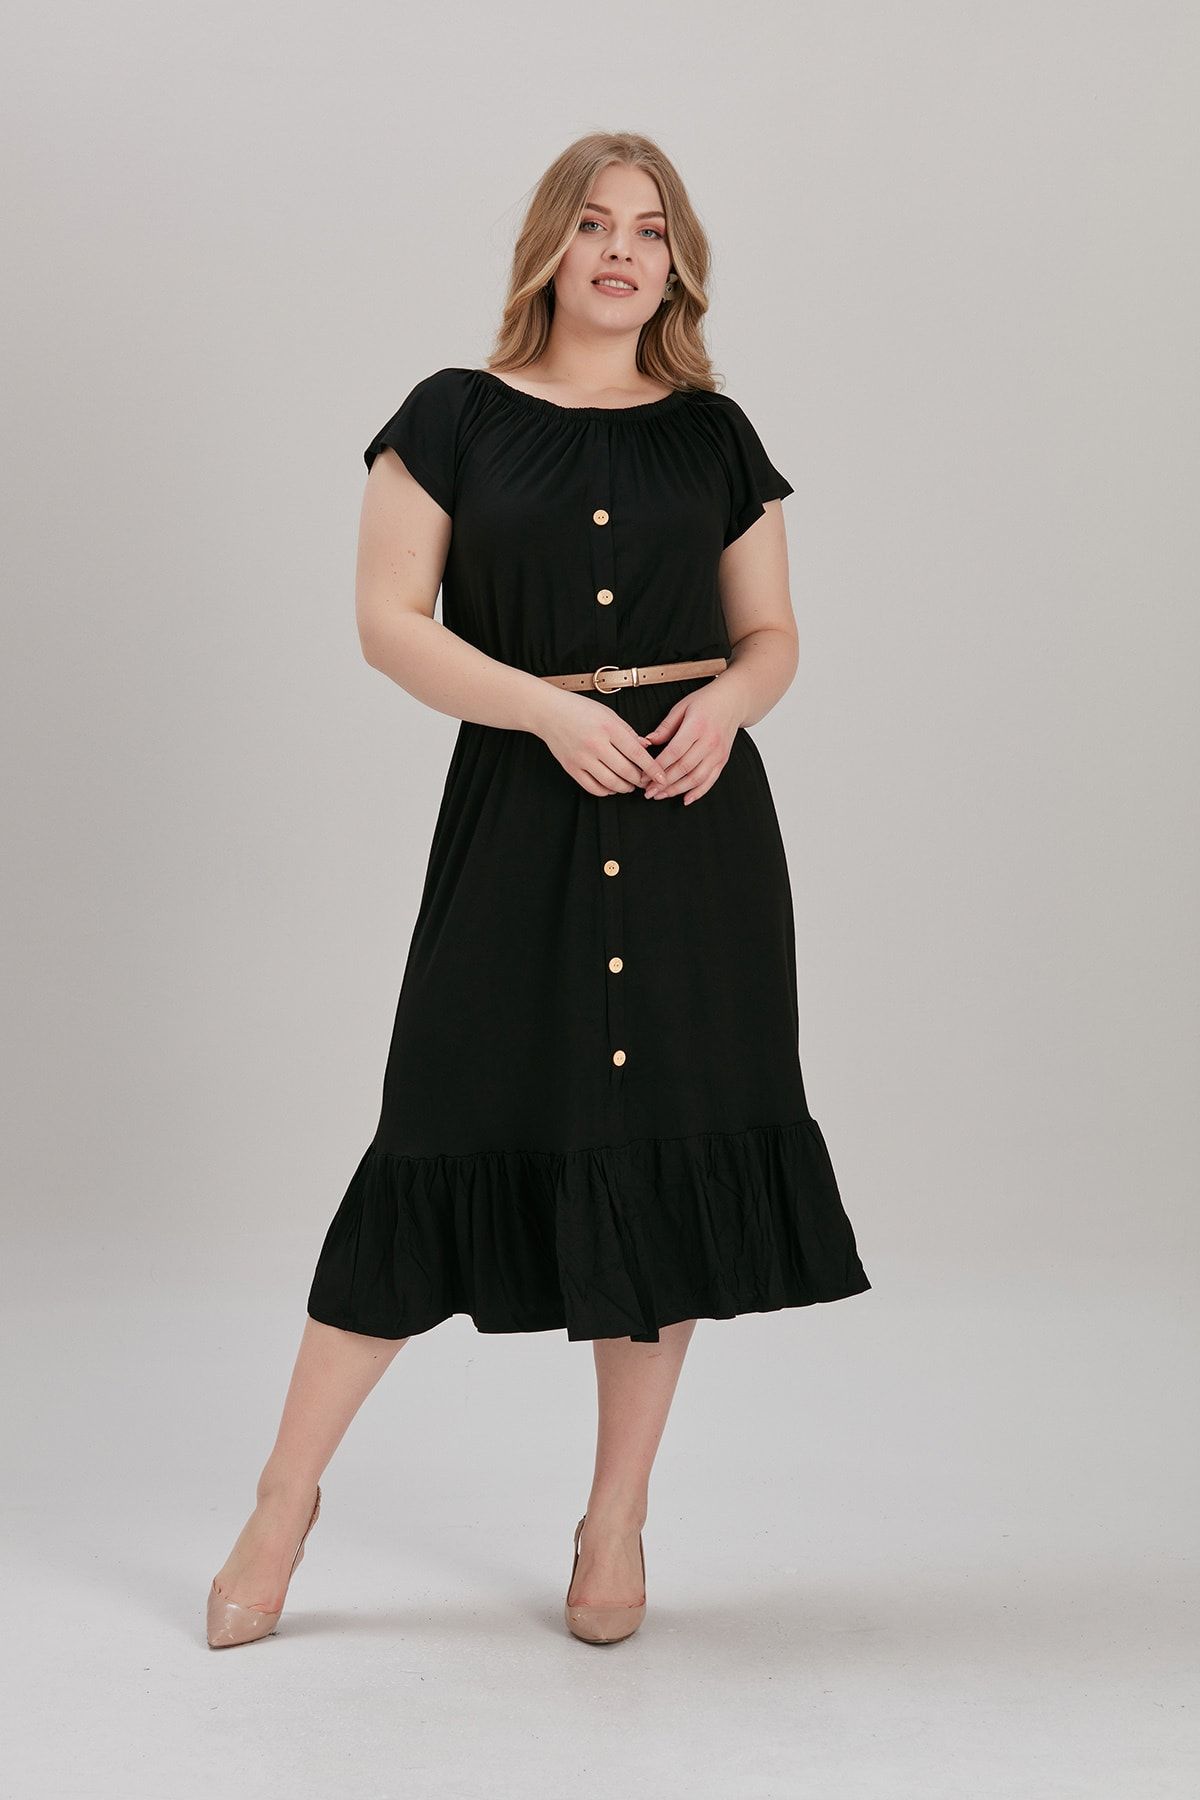 LİKRA Kadın Siyah Büyük Beden Yaka Lastik Eteği Fırfır Lı Viskon Elbise (kemer Dahil Değil)